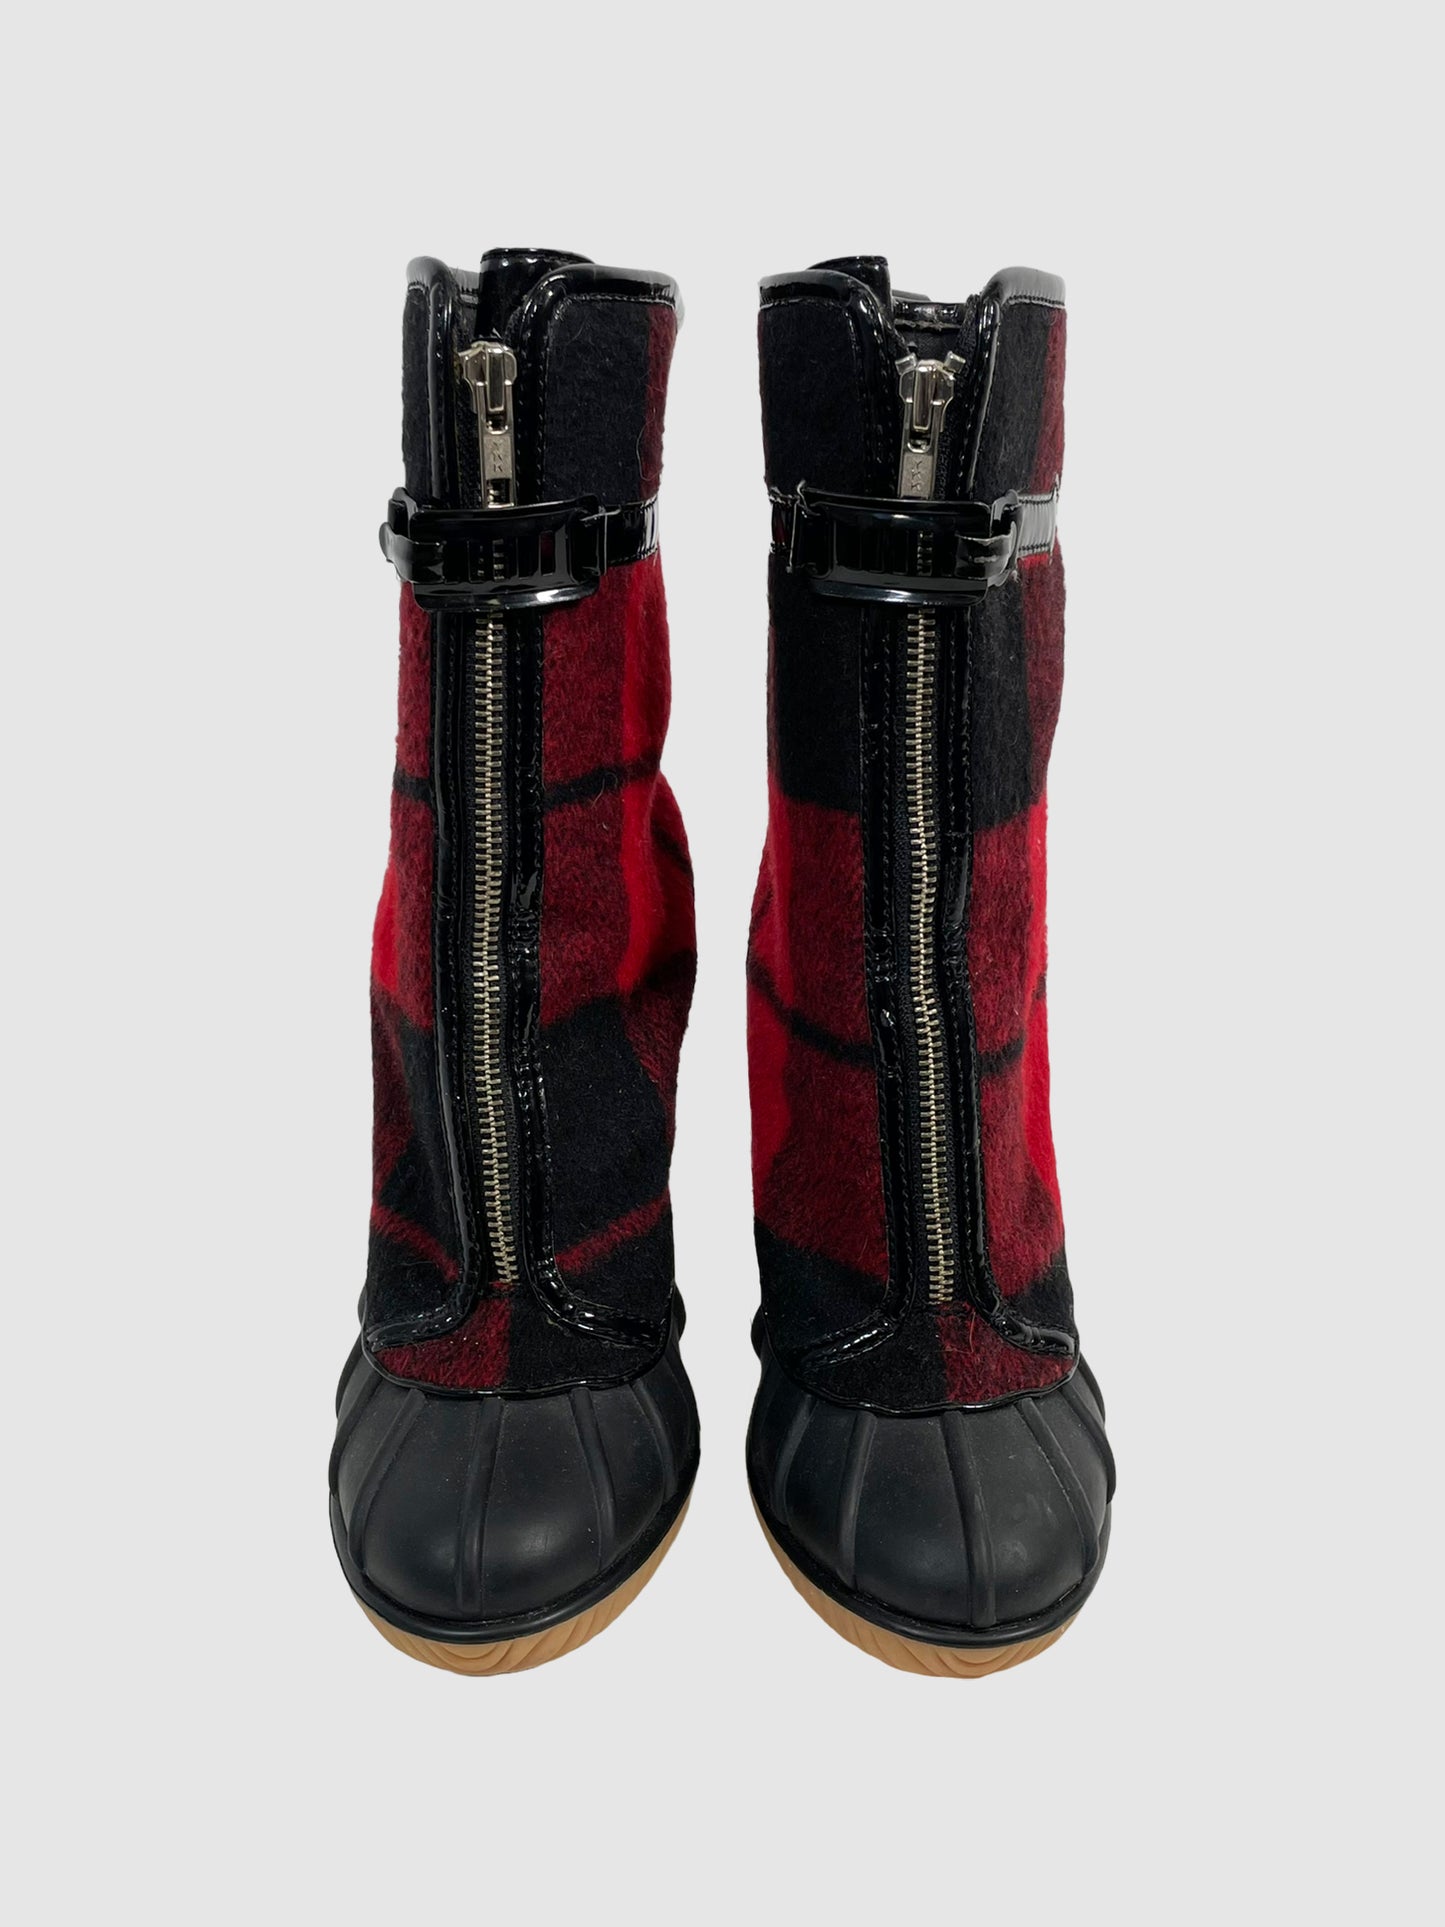 Michael Kors Plaid Ankle Boots - Size 8